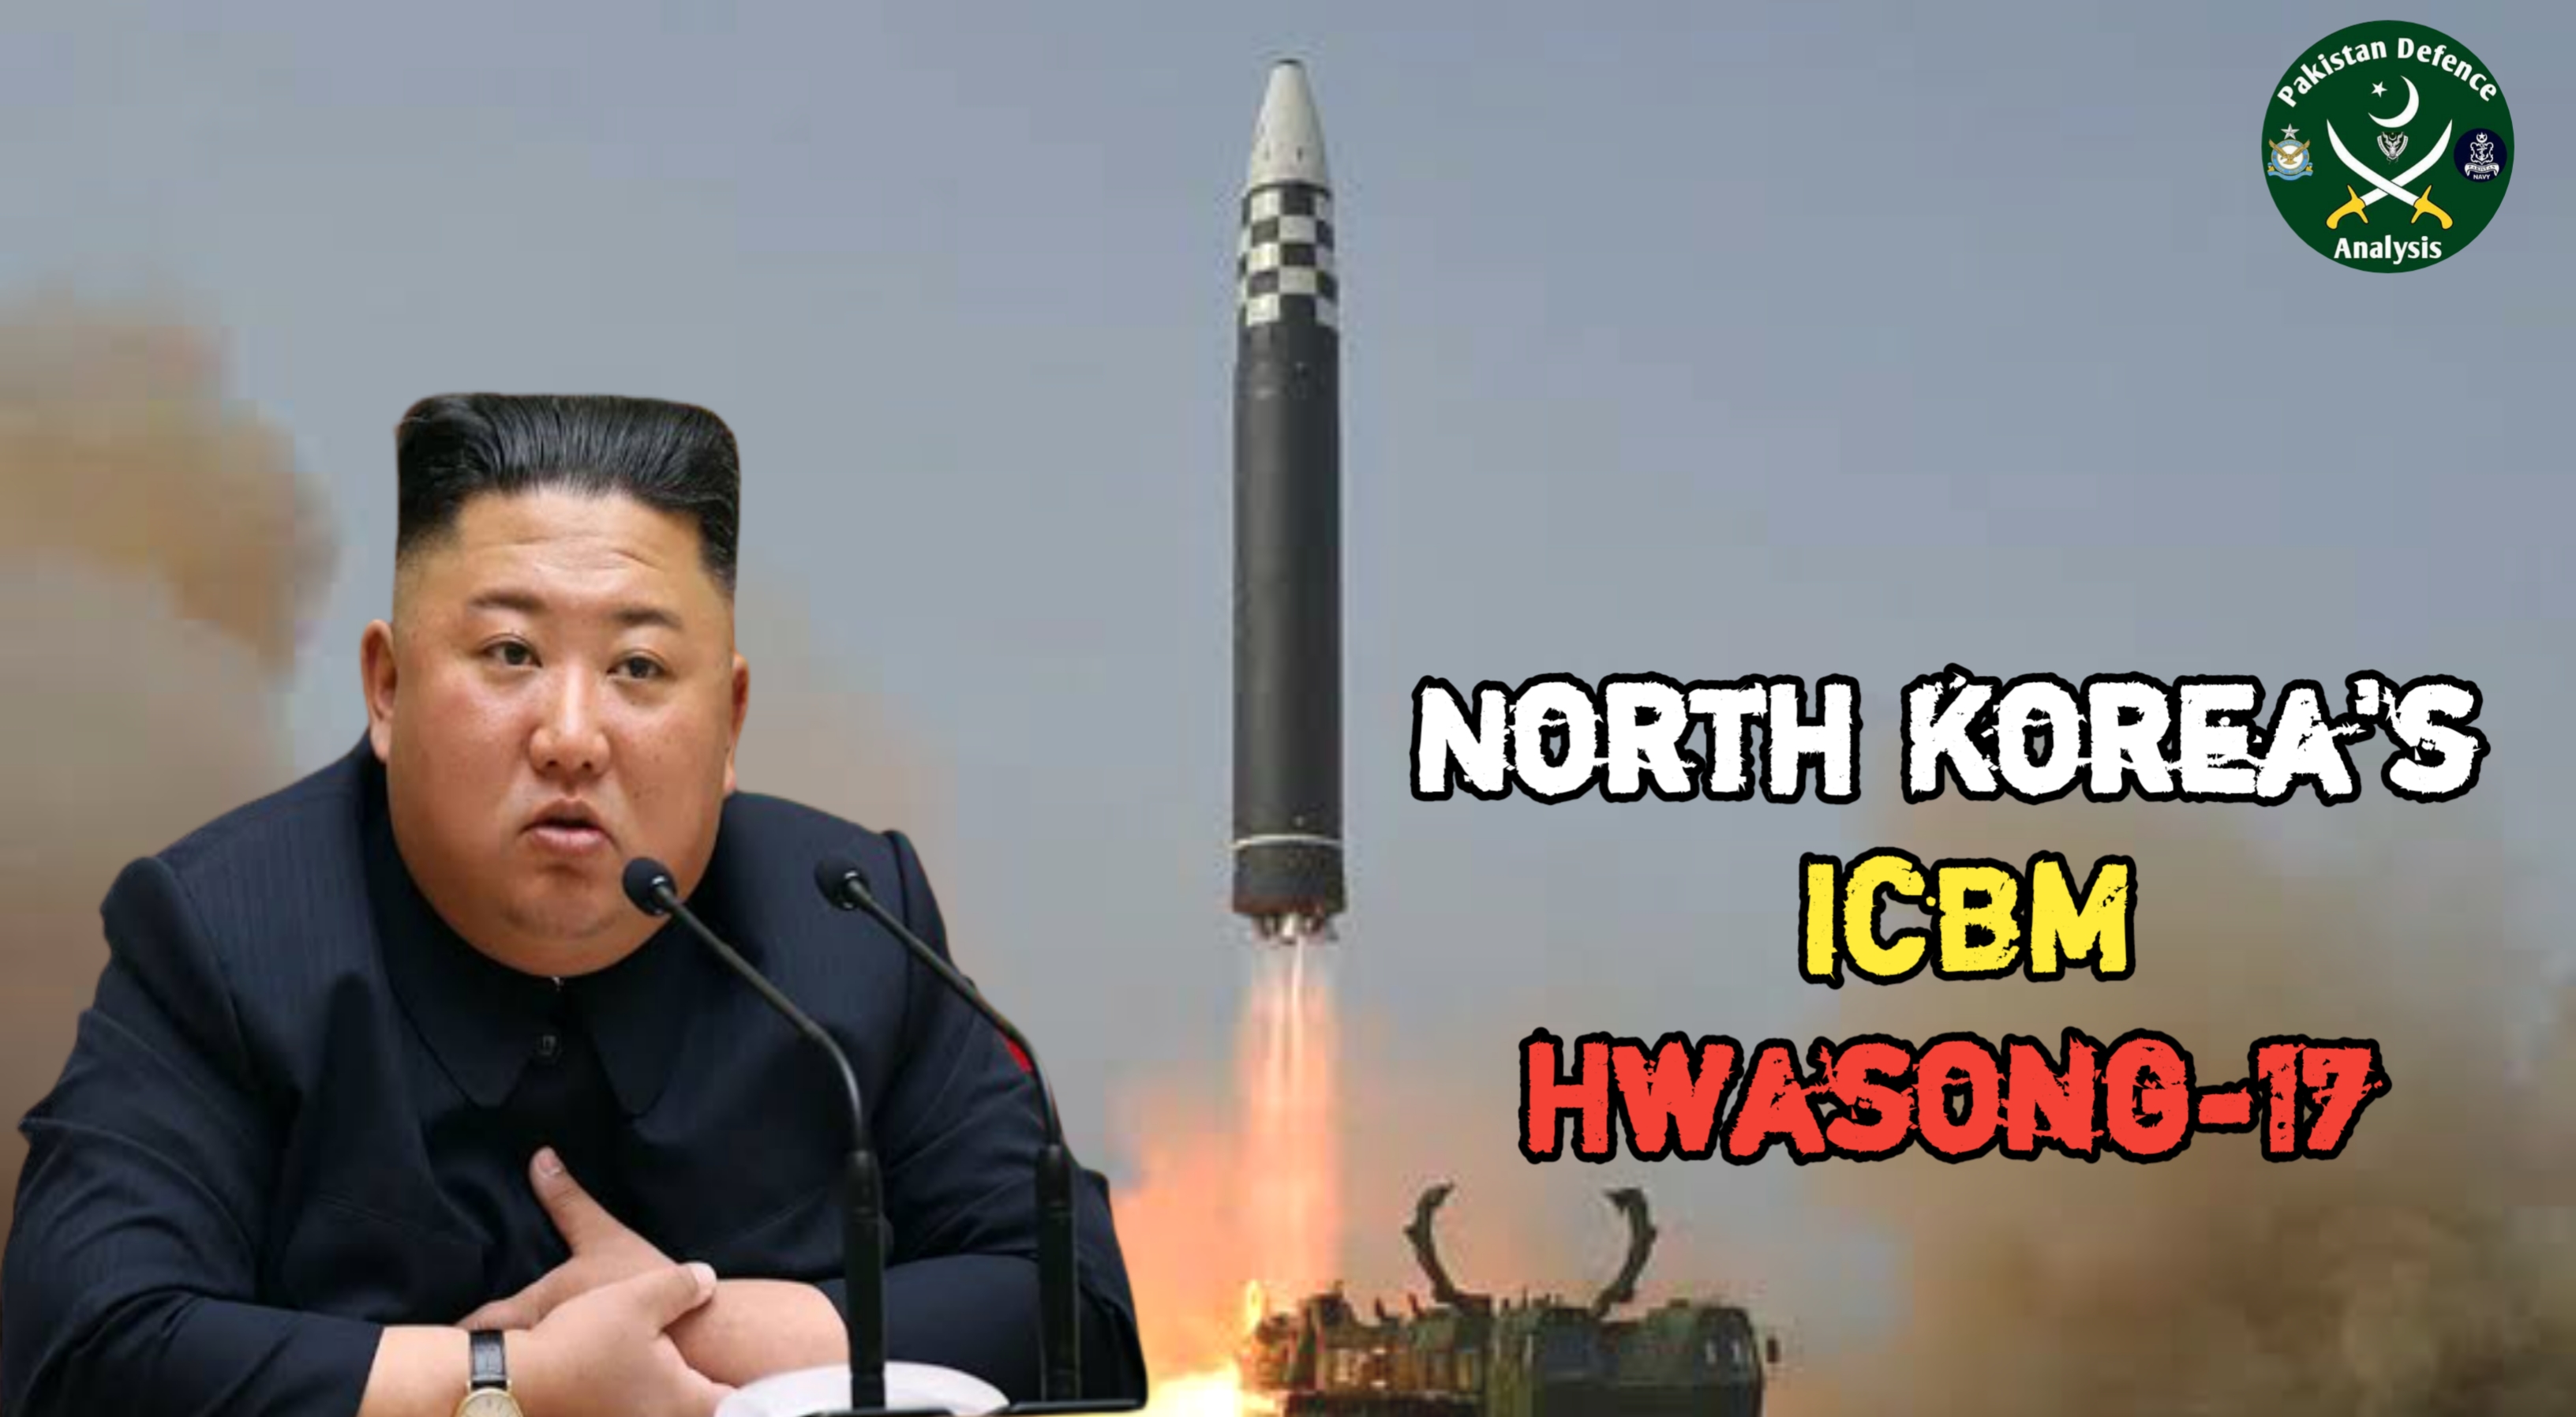 North Korea Successfully Tested Hwasong17 ICBM